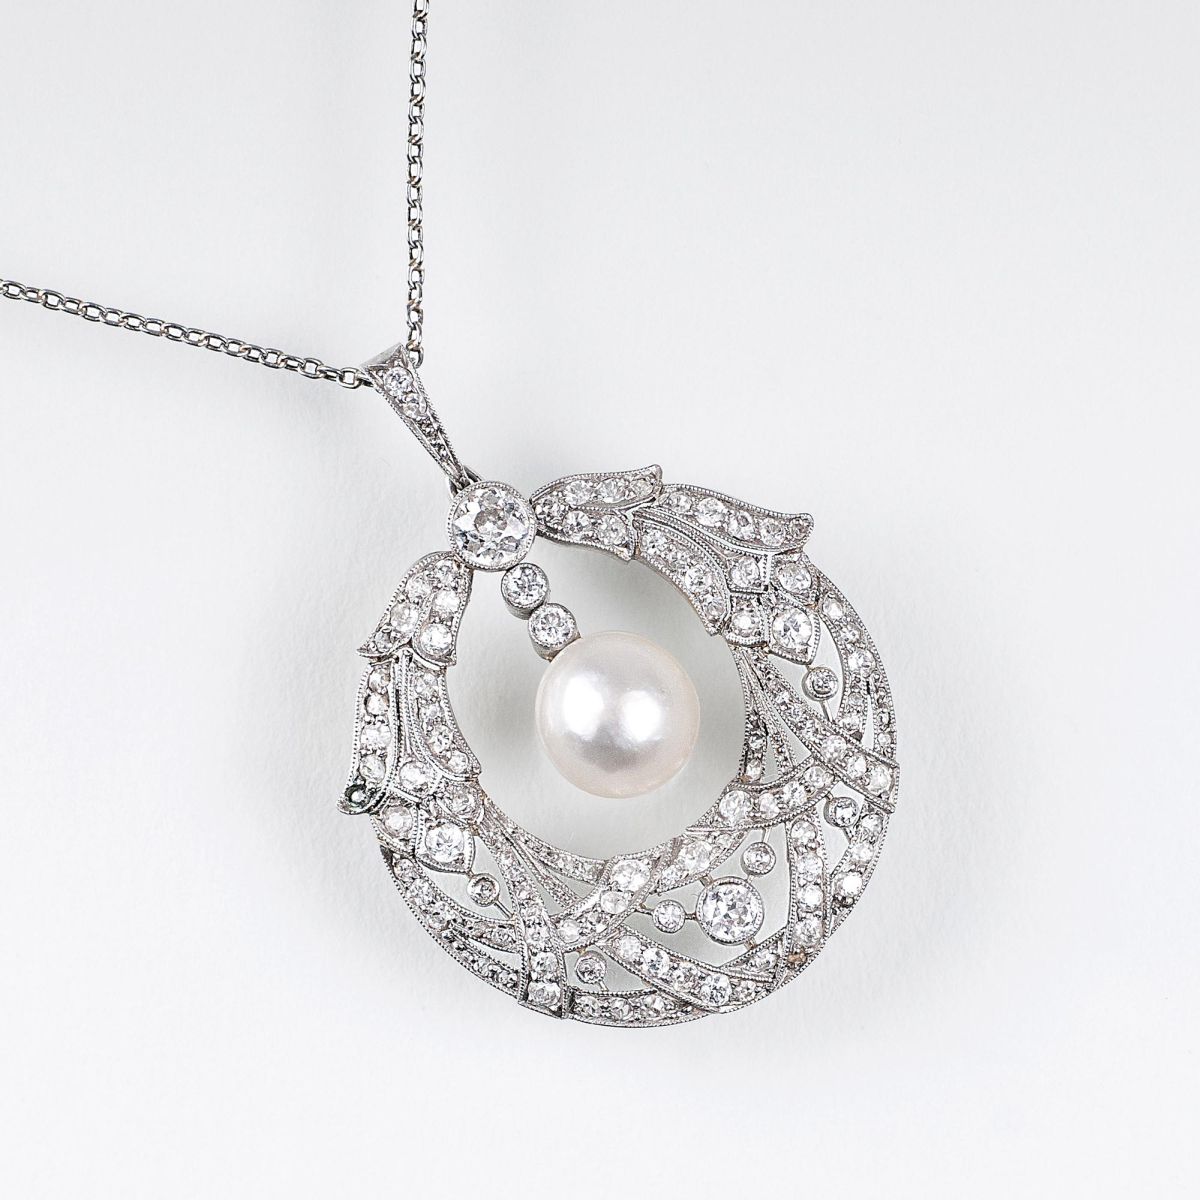 A fine Art Nouveau Diamond Natural Pearl Pendant with necklace